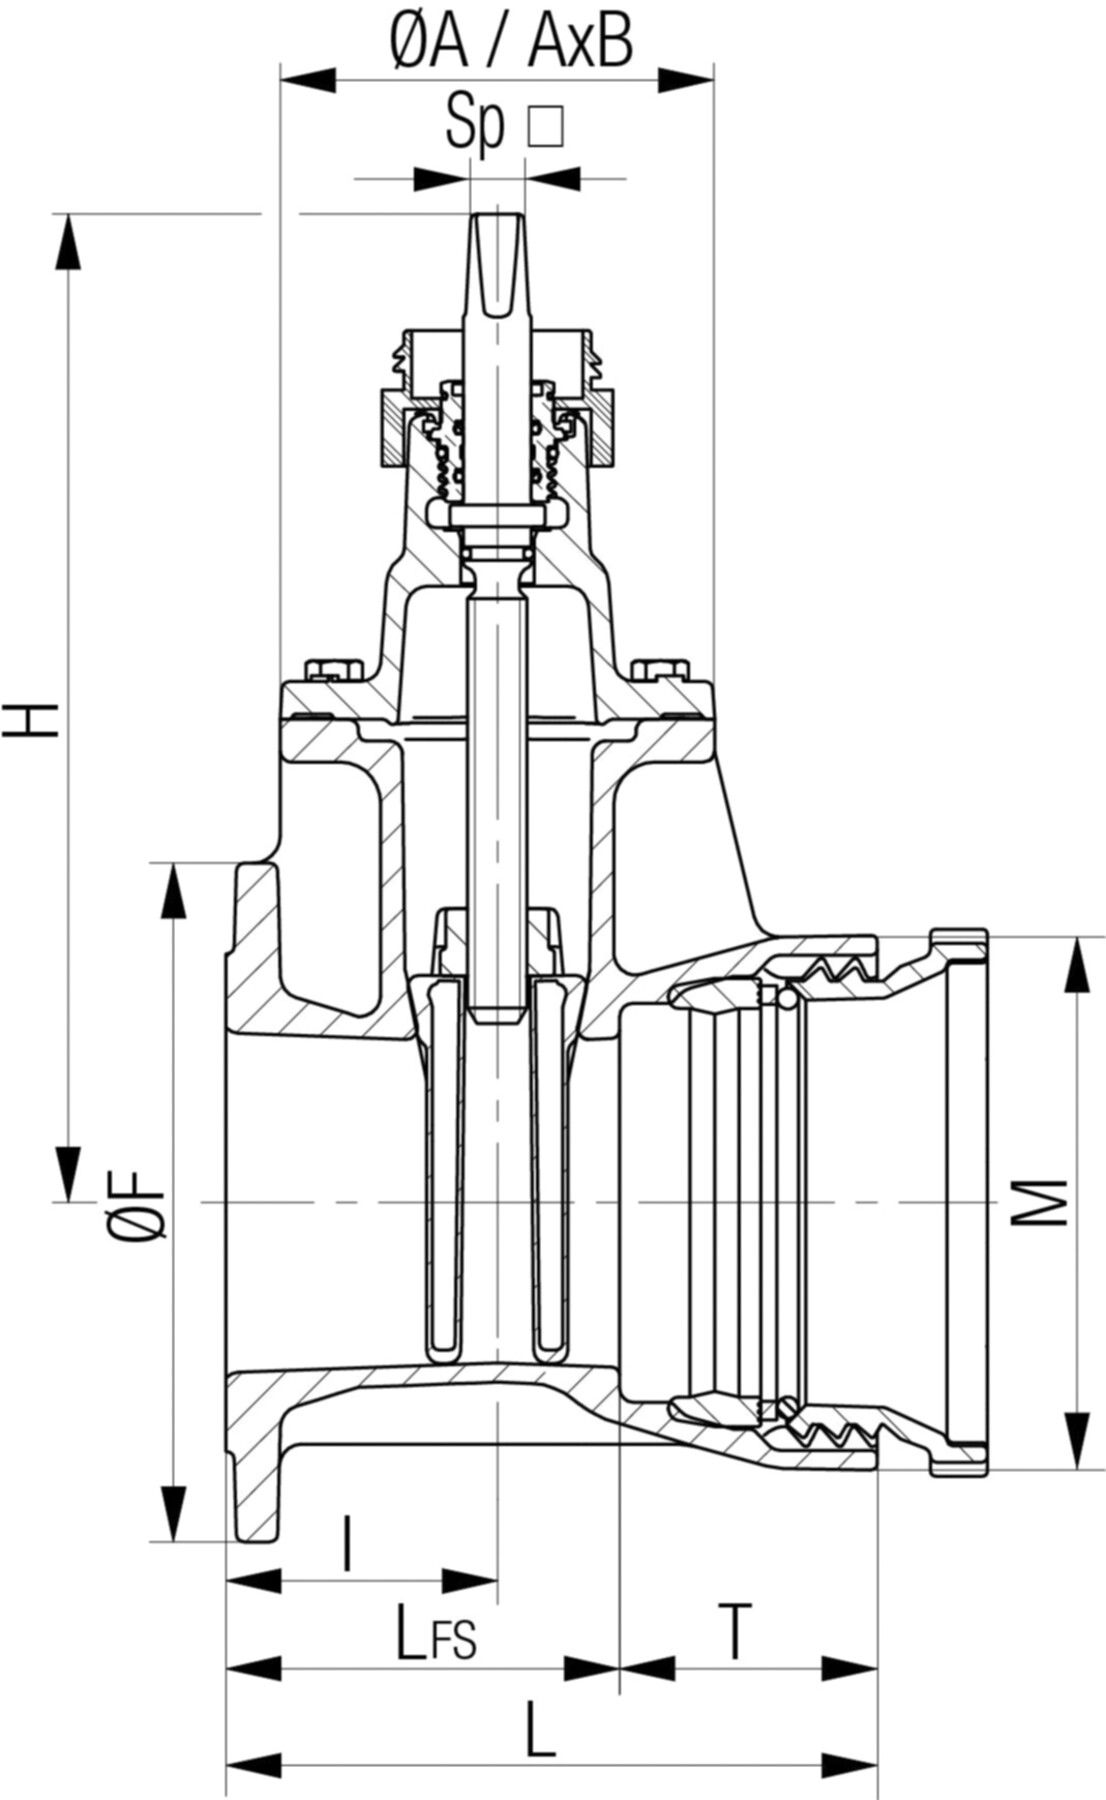 Flansch-/Schraubmuffenschieber Fig. 5420 DN 100 PN 10/16 - Von Roll Armaturen